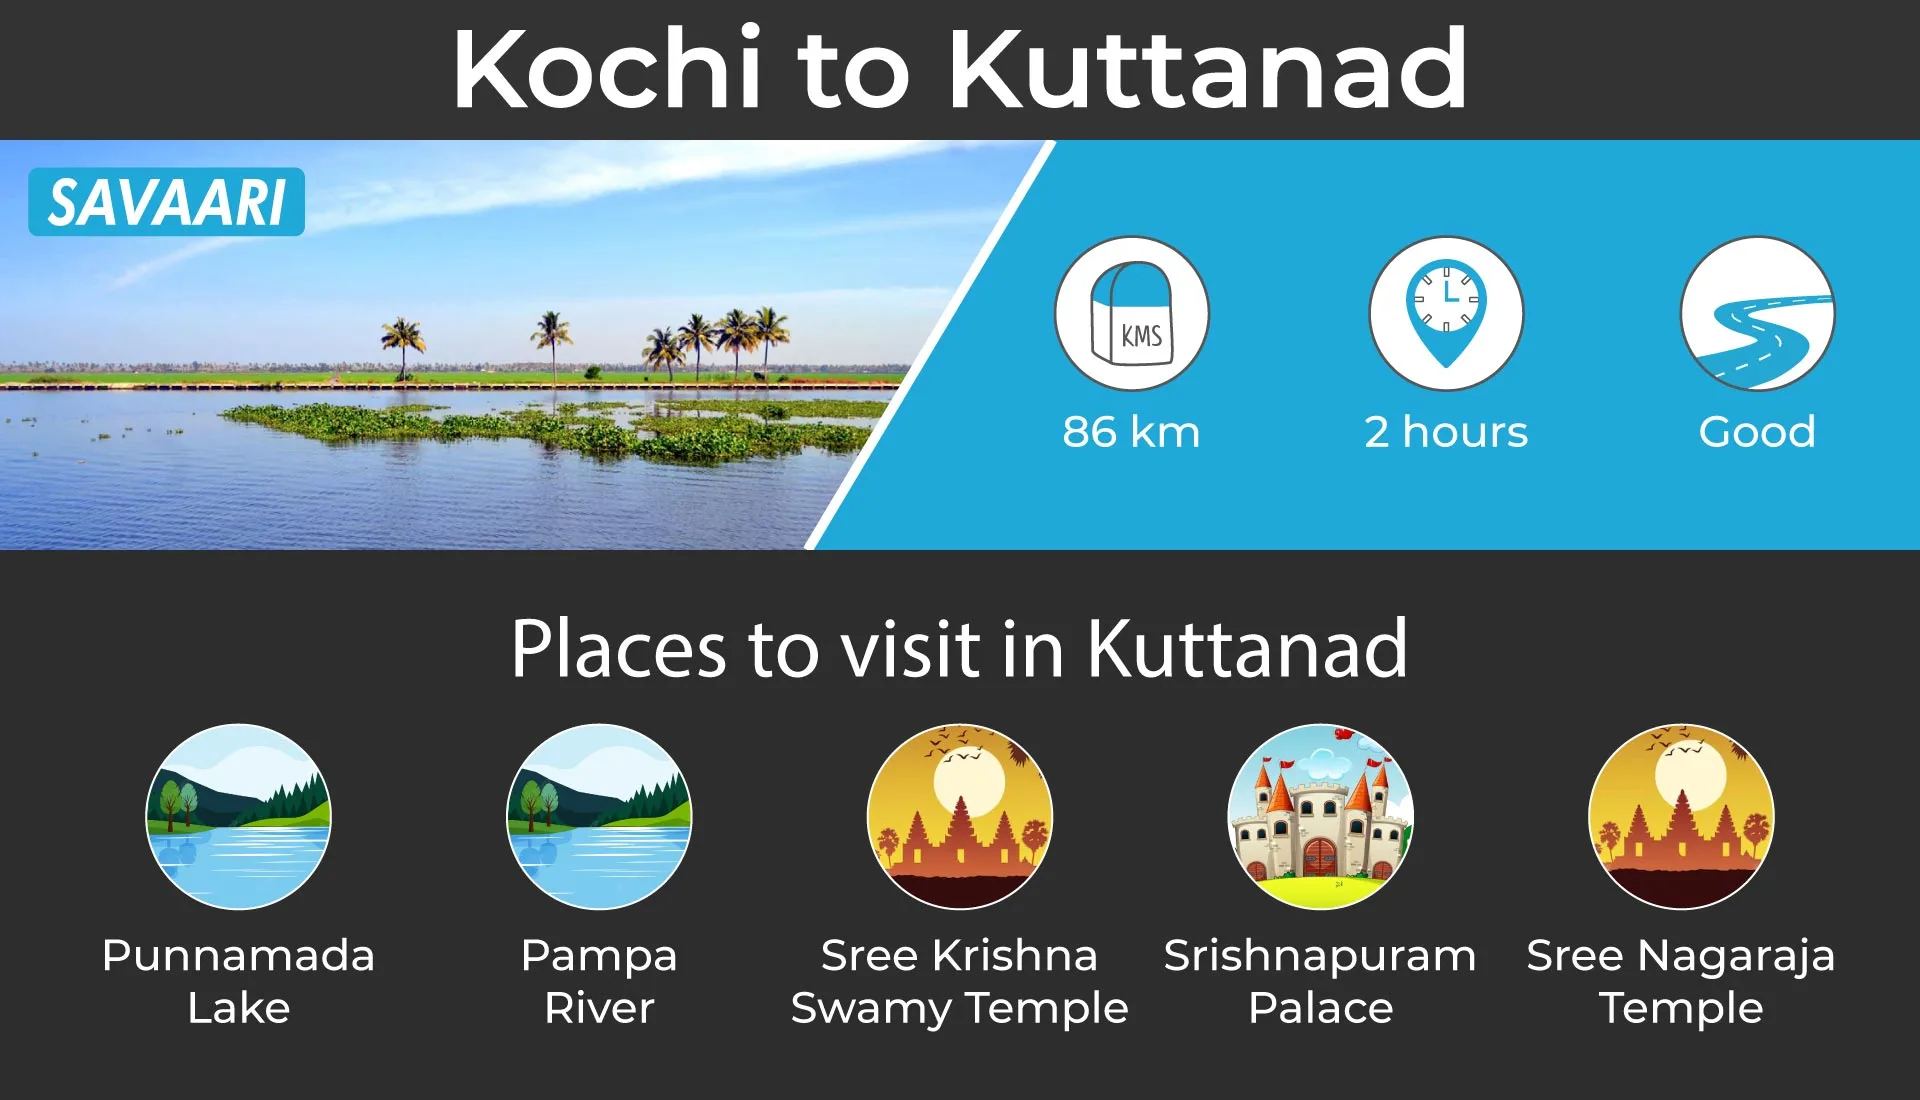 Kochi to Kuttanad road trip